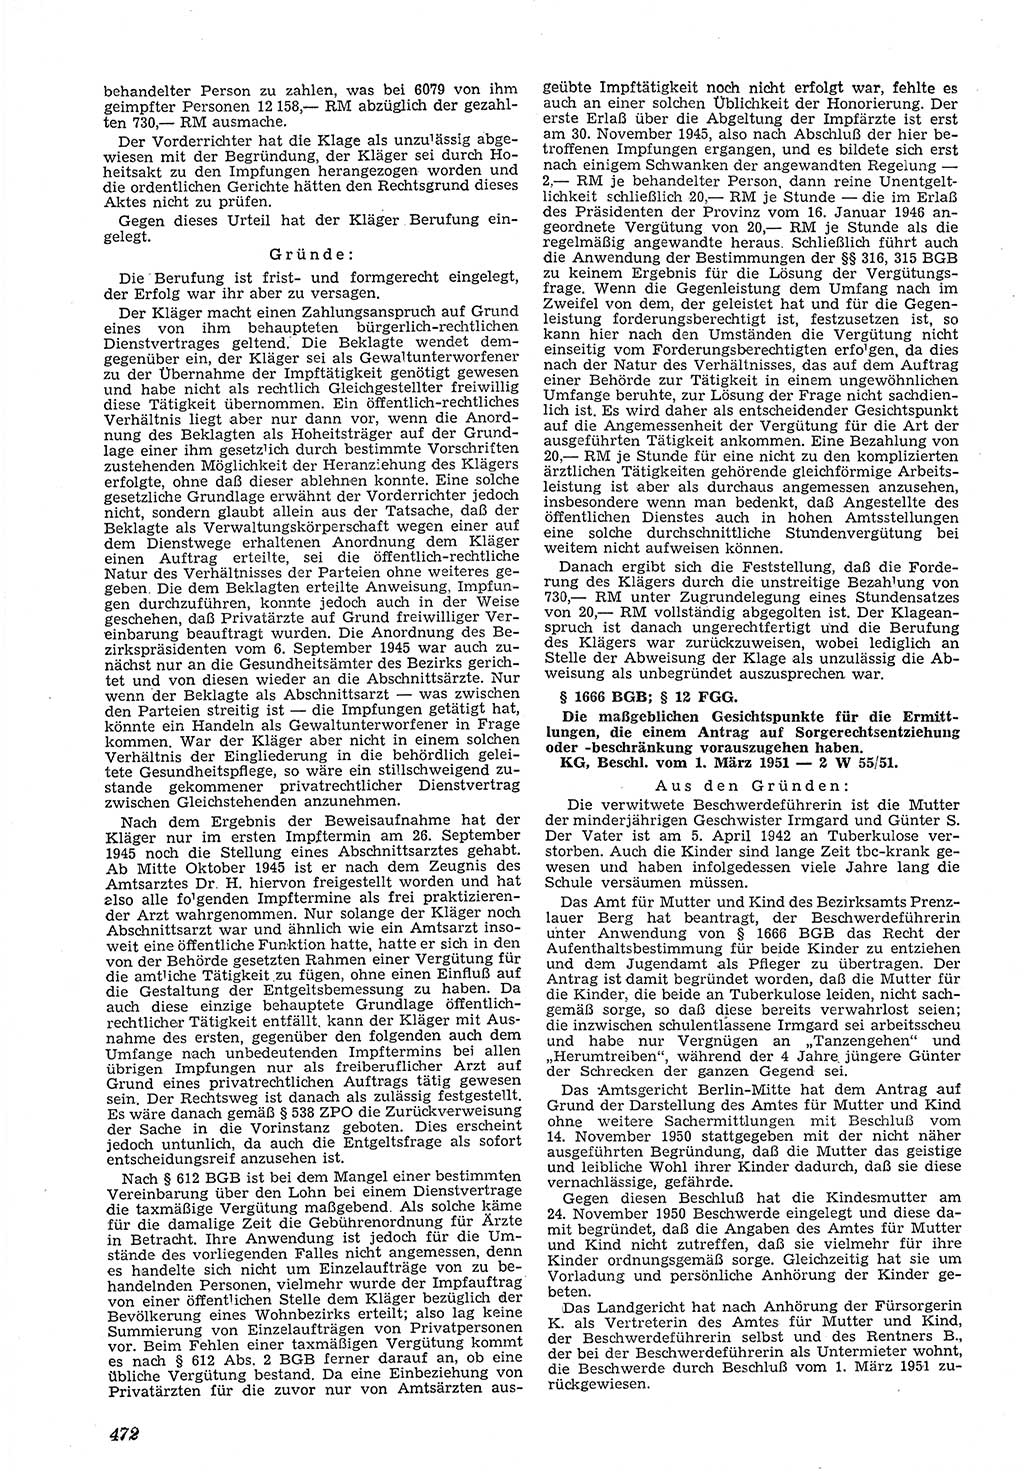 Neue Justiz (NJ), Zeitschrift für Recht und Rechtswissenschaft [Deutsche Demokratische Republik (DDR)], 5. Jahrgang 1951, Seite 472 (NJ DDR 1951, S. 472)